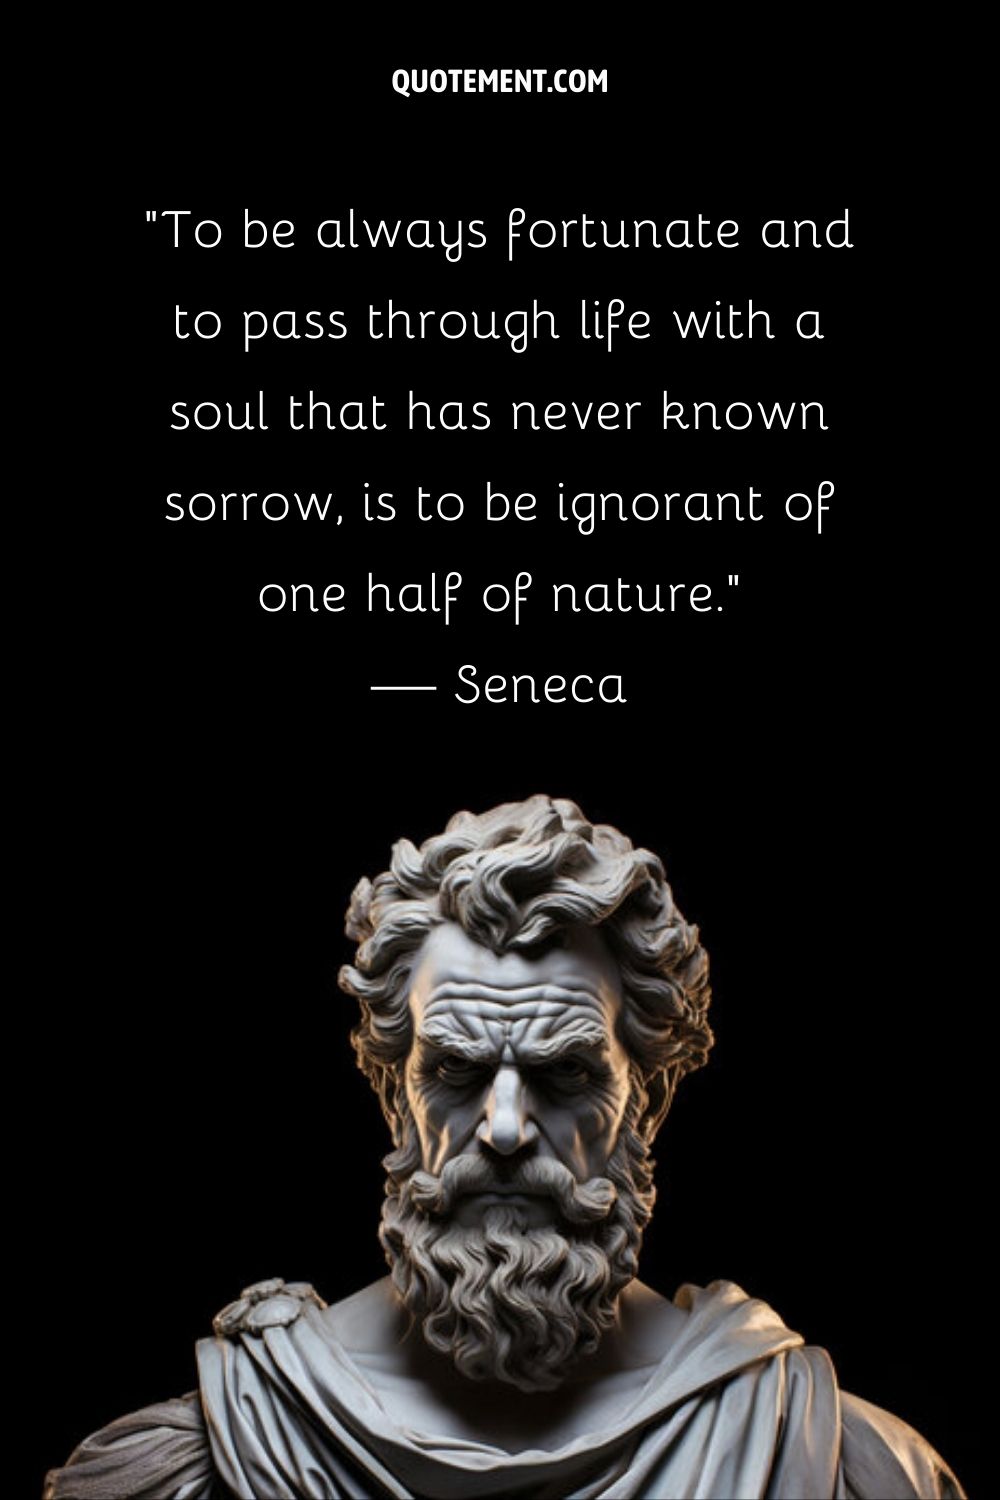 El filósofo estoico Séneca inmortalizado en mármol.